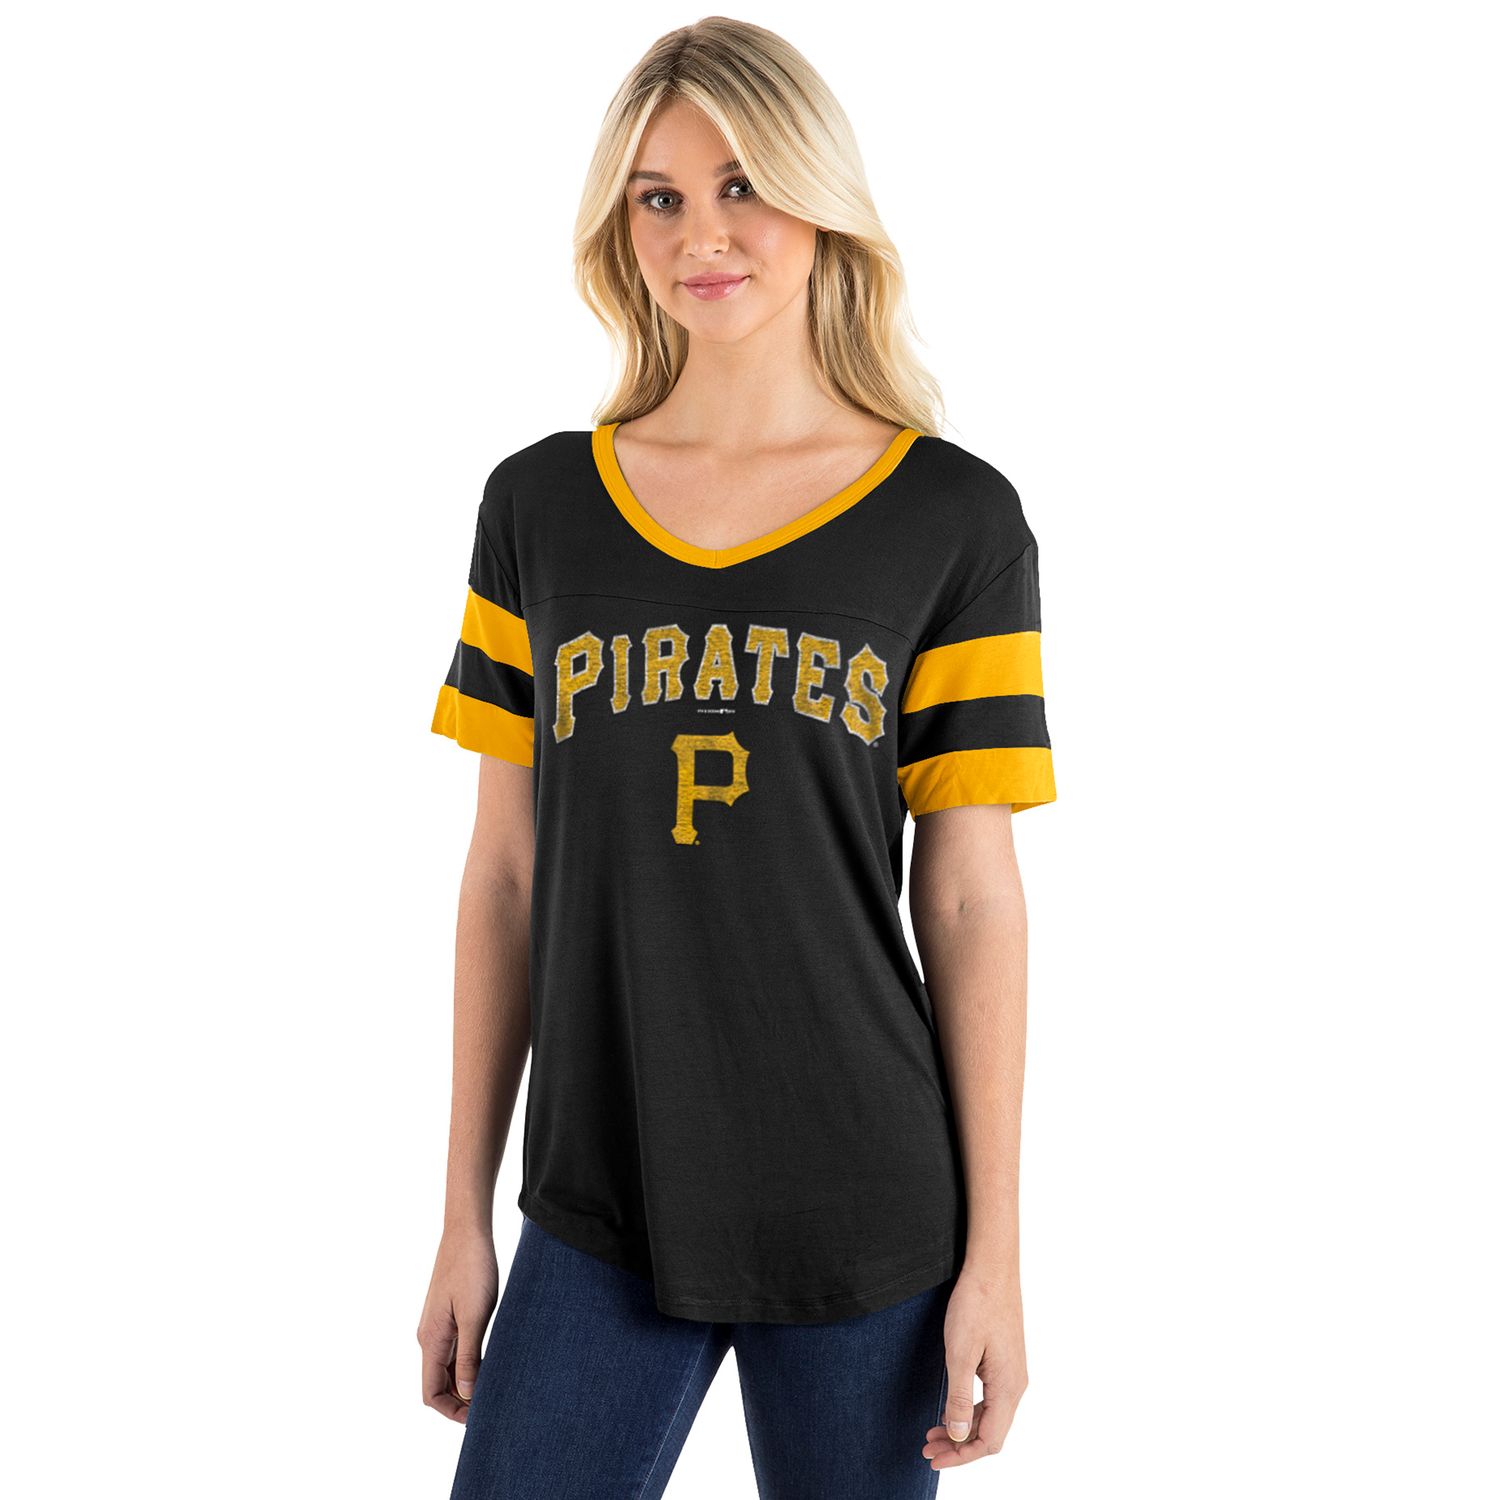 womens pittsburgh pirates shirt